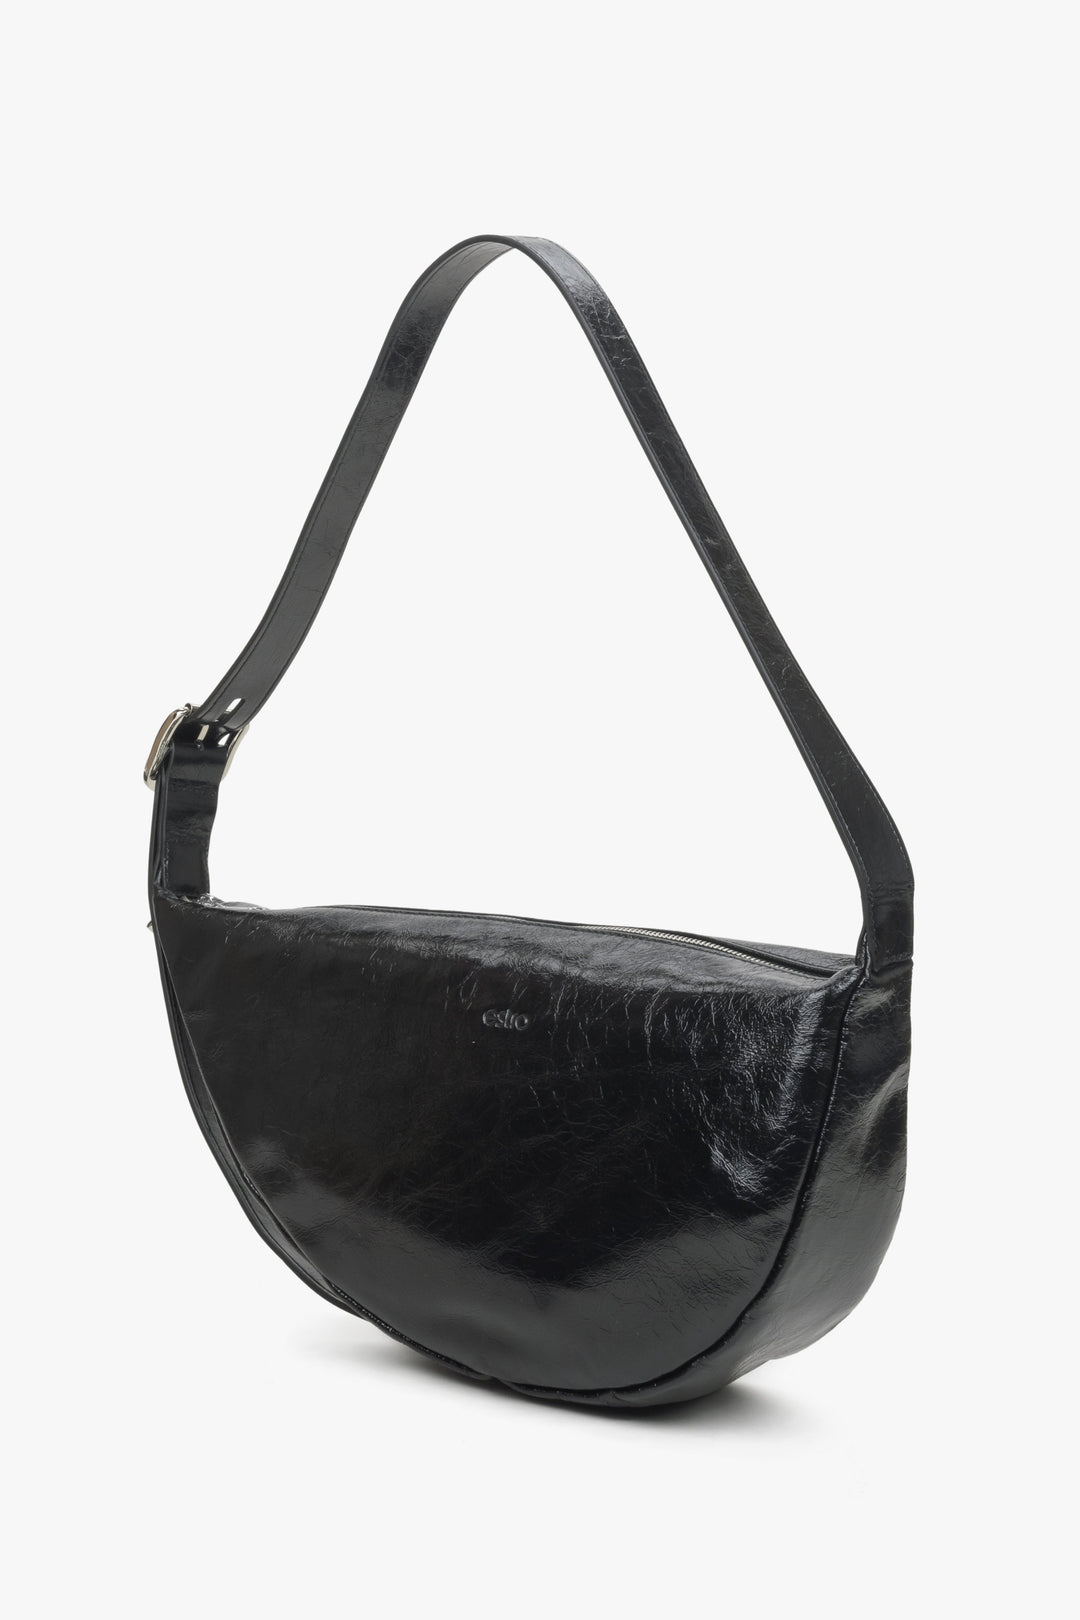 Women's Black Shoulder Bag made of Patent Leather Estro ER00114442.